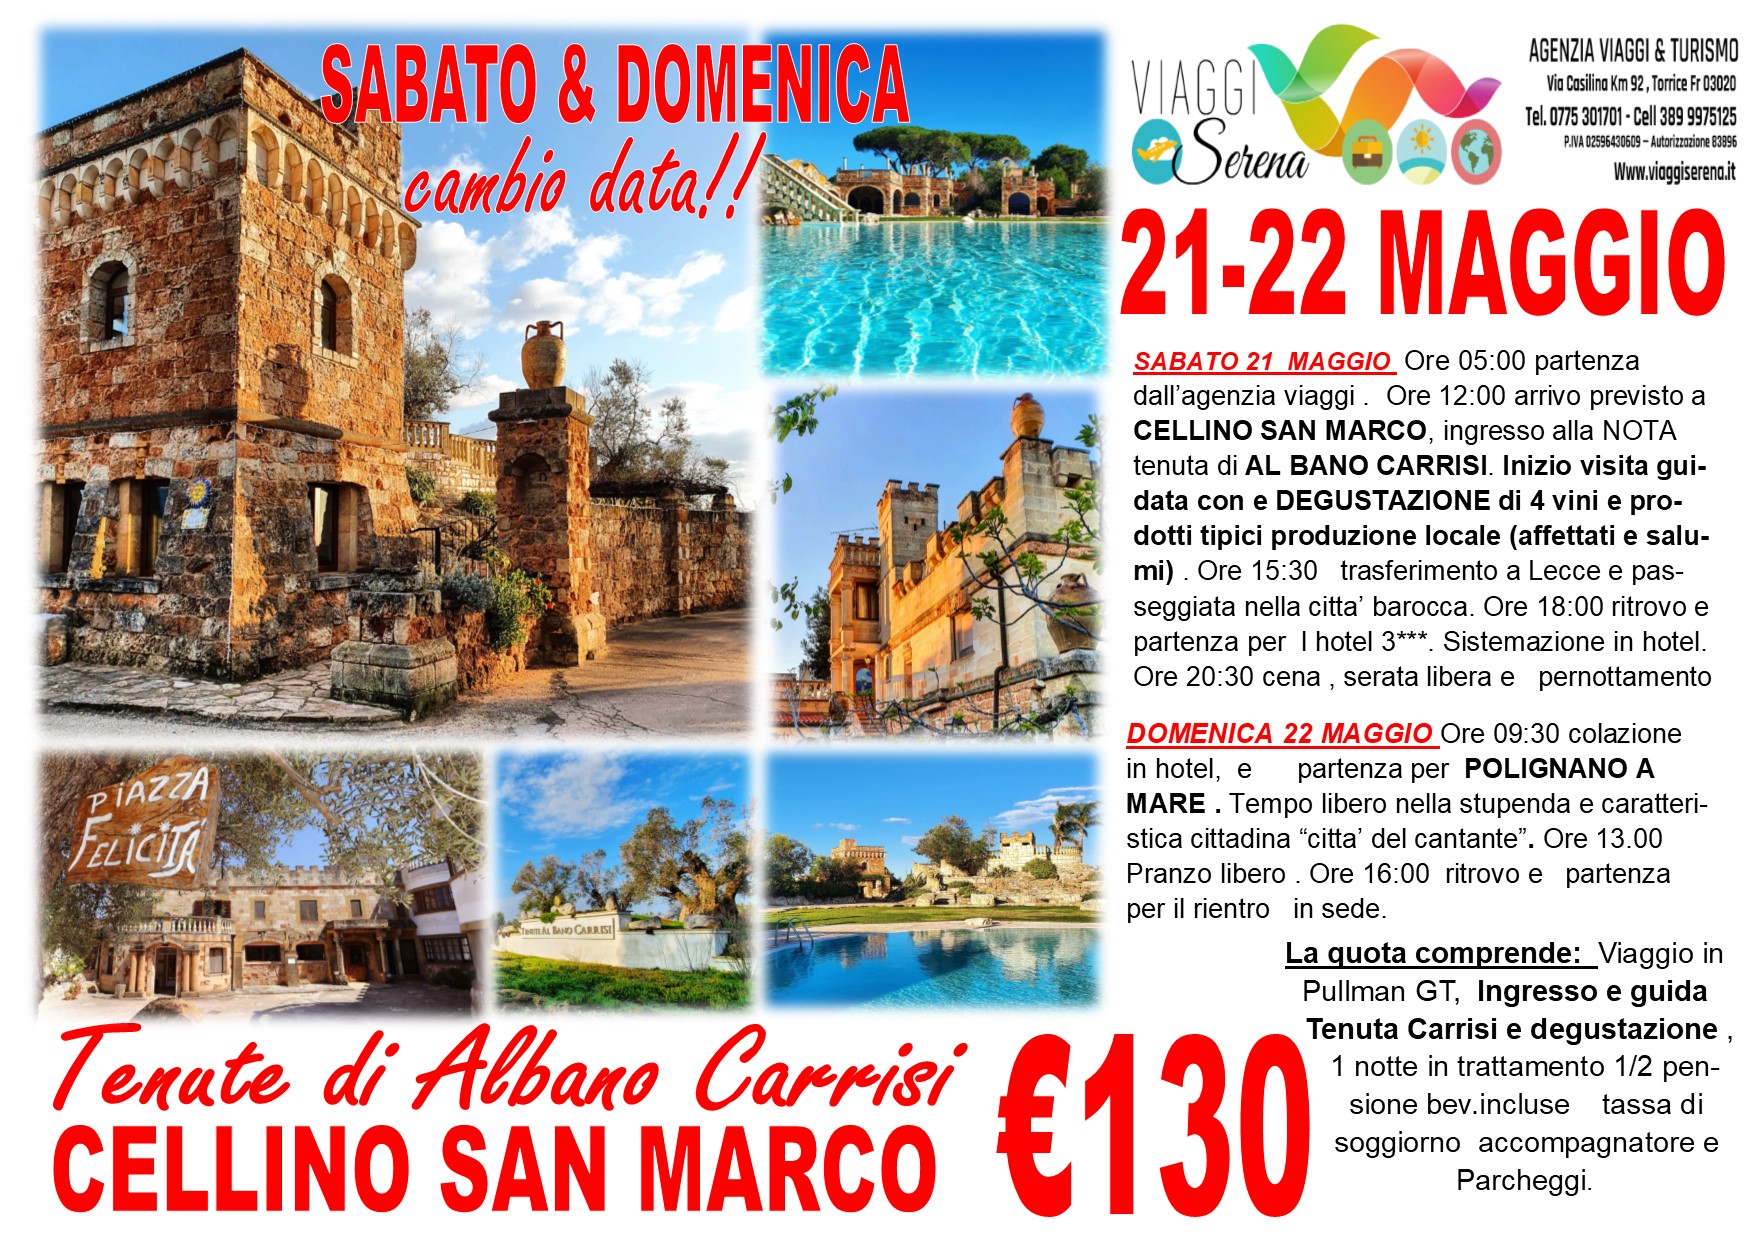 Viaggi di Gruppo: Cellino San Marco “Tenuta Albano Carrisi”  21-22 Maggio € 130,00